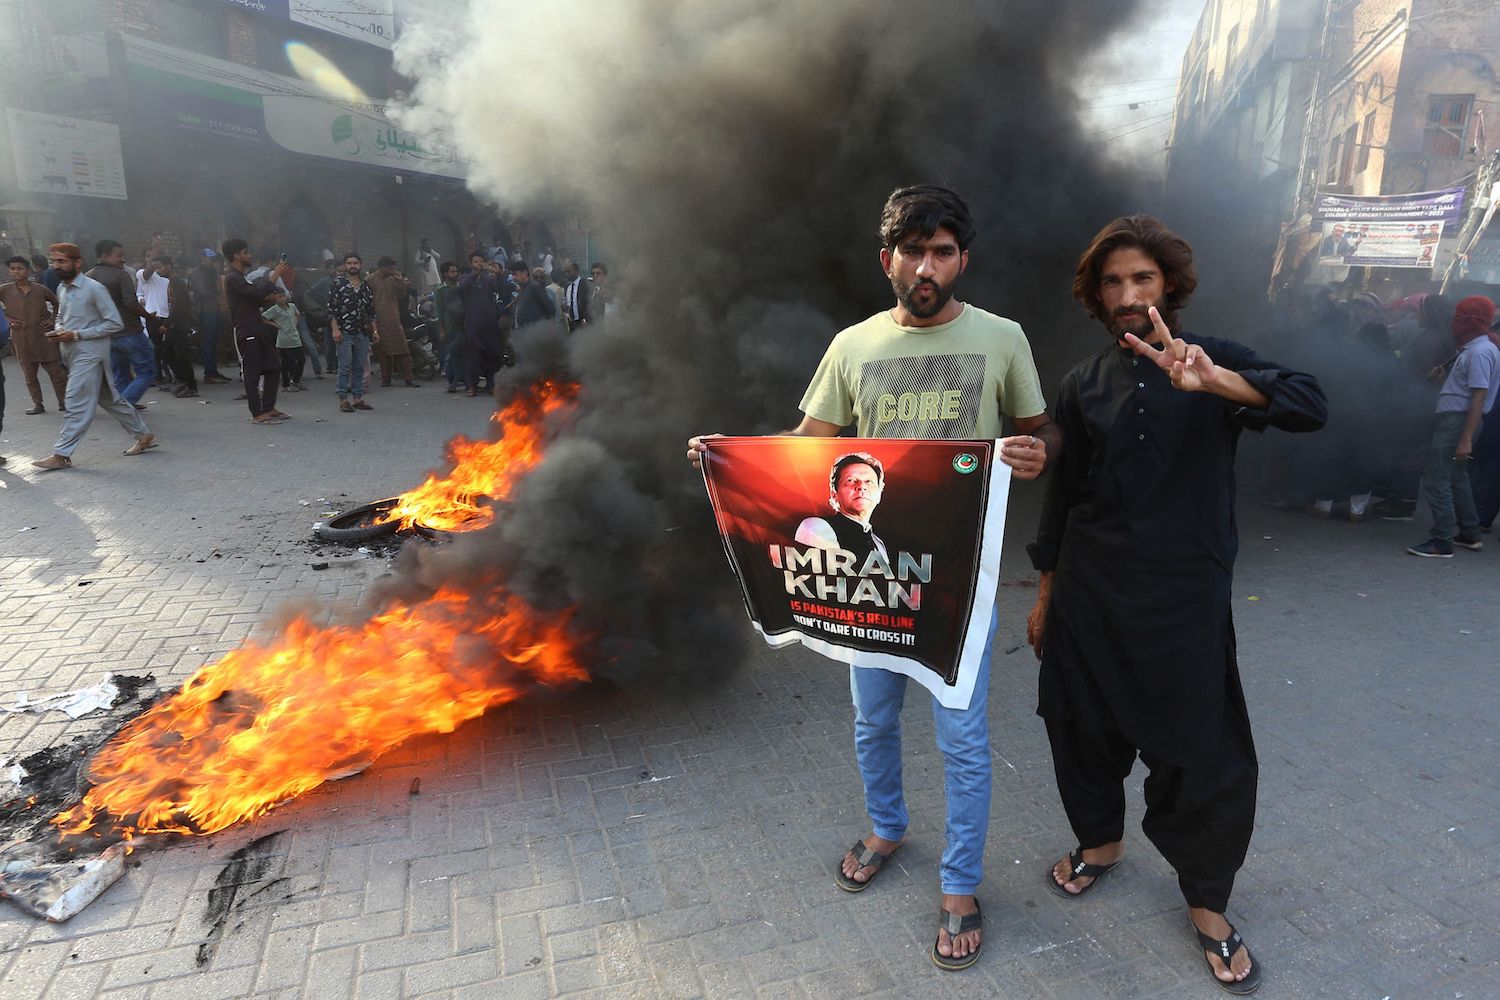 पूर्व प्रधानमन्त्री इमरान खानको गिरफ्तारीले पाकिस्तानमा भड्कियो हिंसात्मक प्रदर्शन